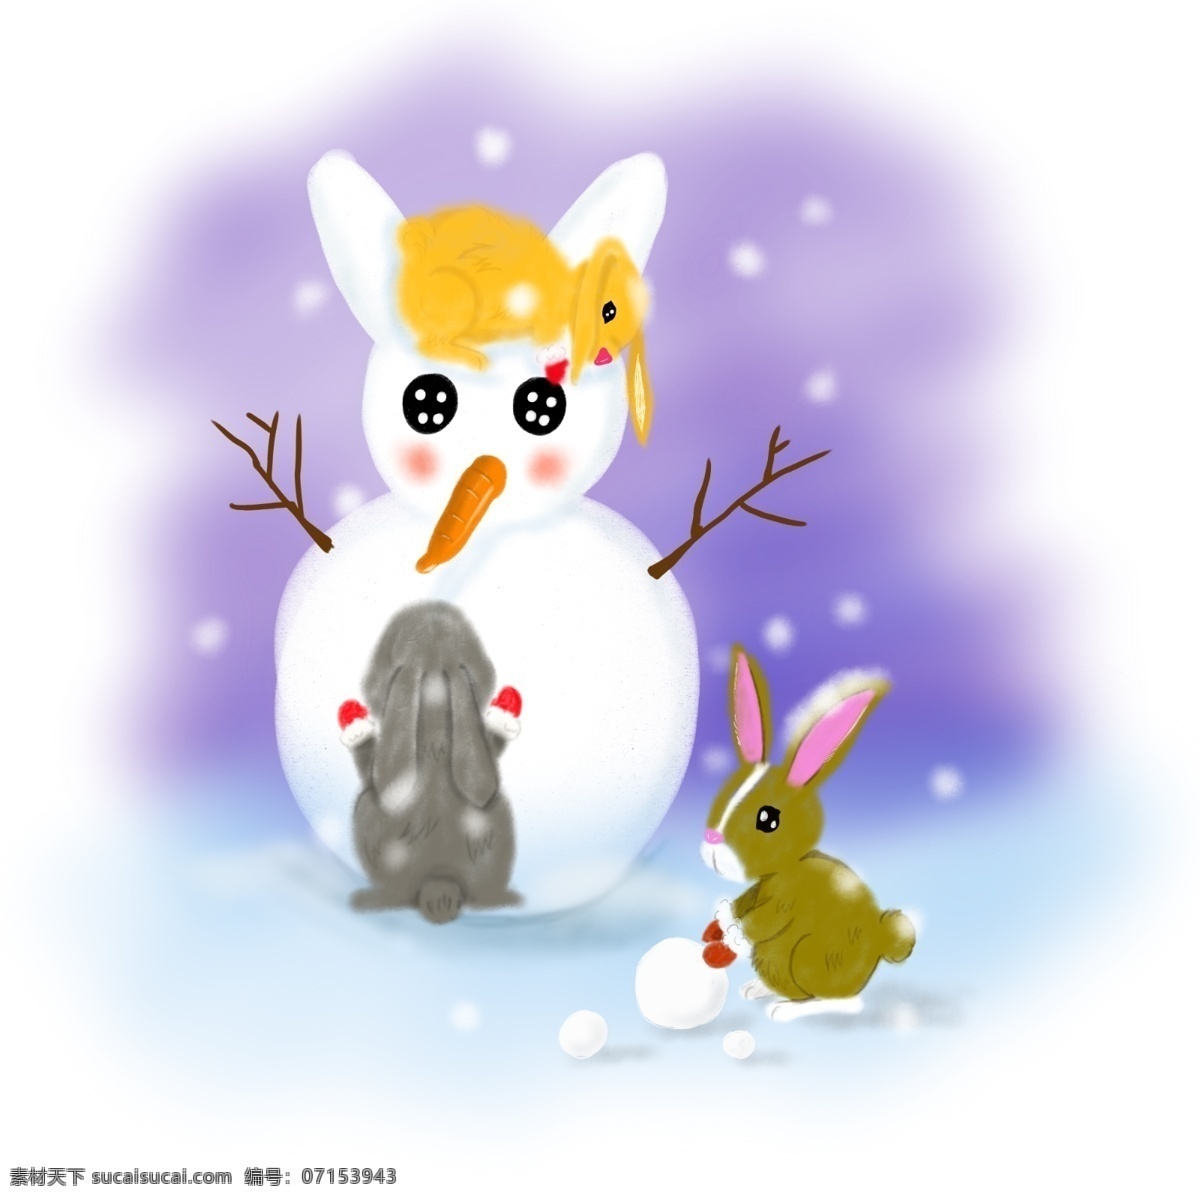 手绘 冬日 雪景 复活节 兔子 商用 插画 元素 冬日雪景 白色 手绘风 雪人 滚雪球兔子